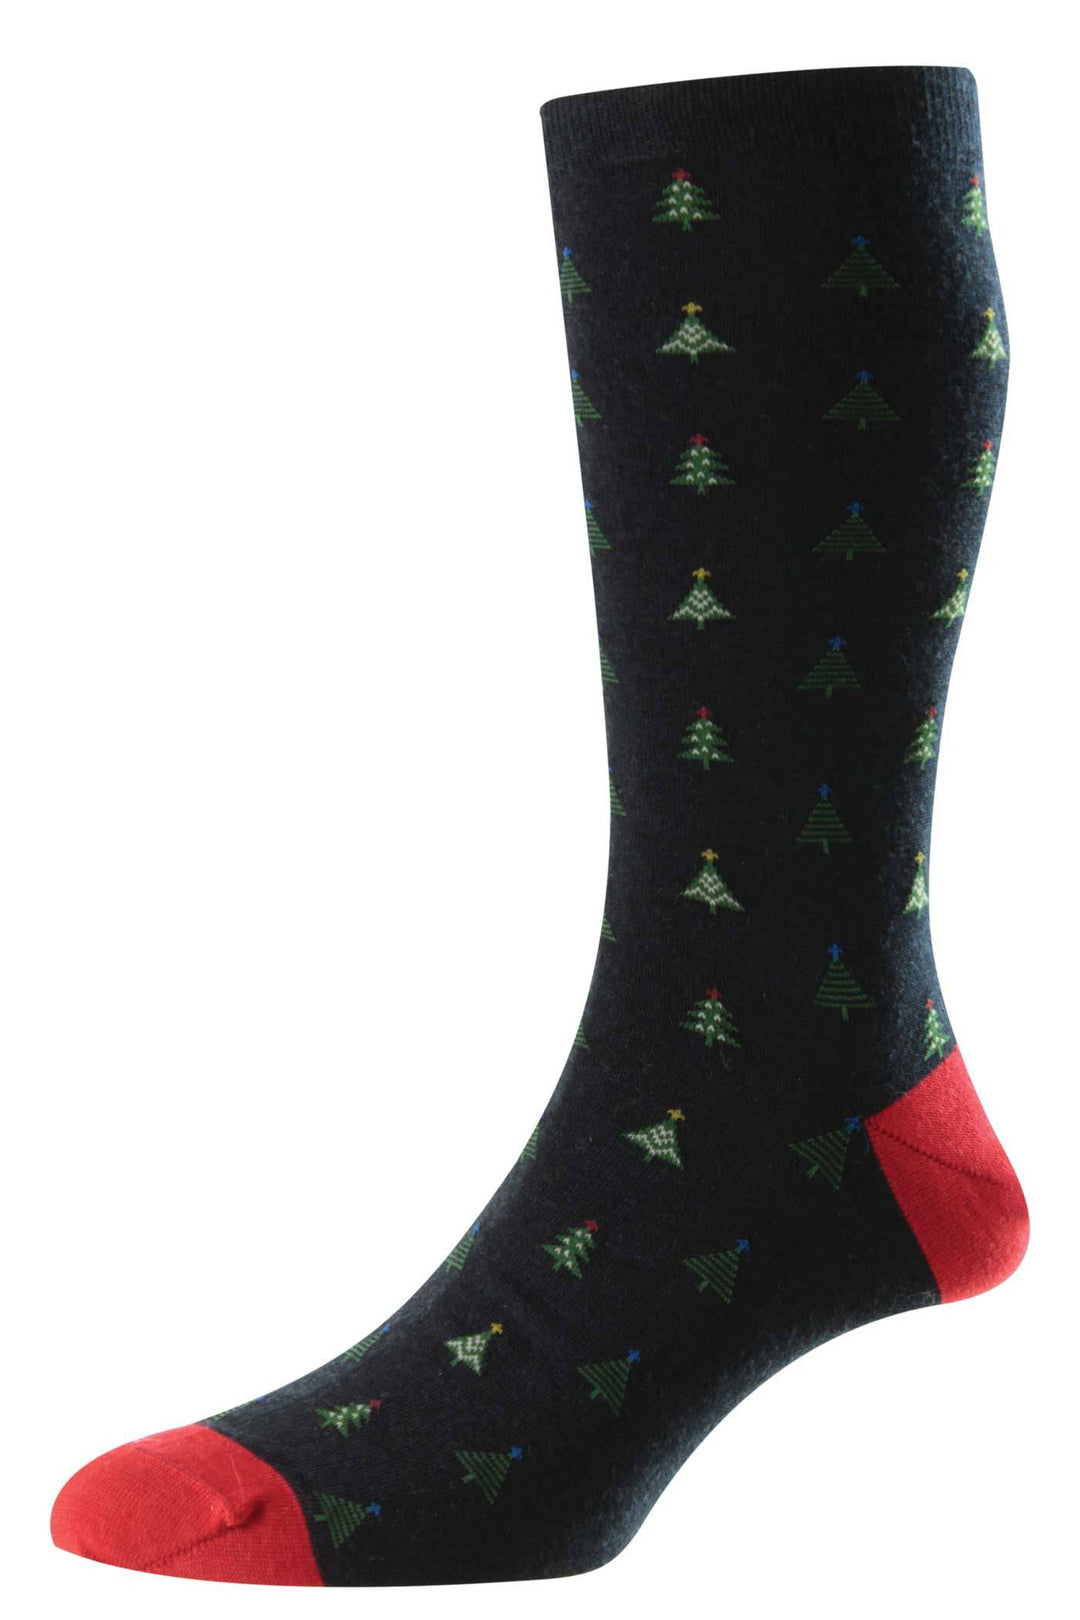 Pantherella Nicholas Christmas Tree Socks